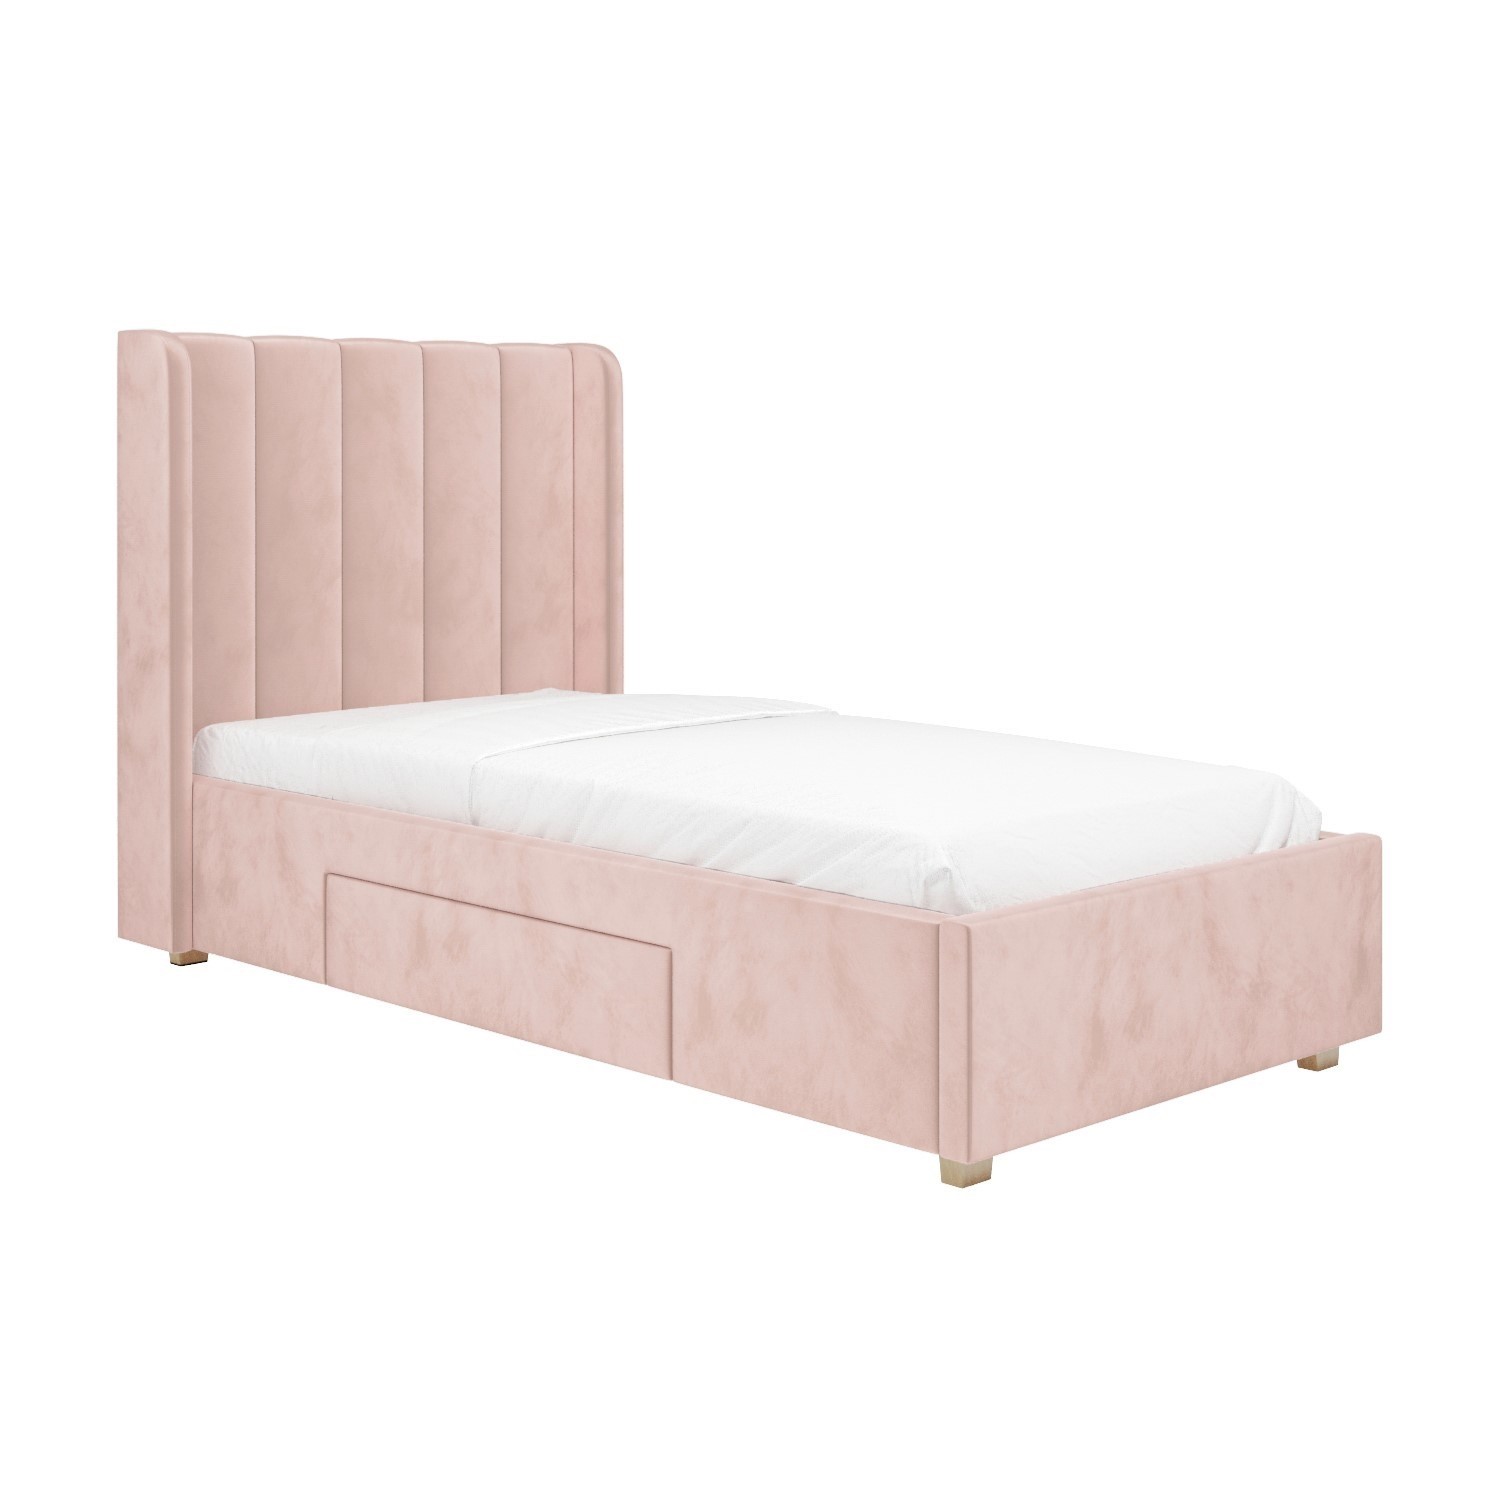 Pink Velvet Single Bed Frame with Storage Drawer - Phoebe - Furniture123